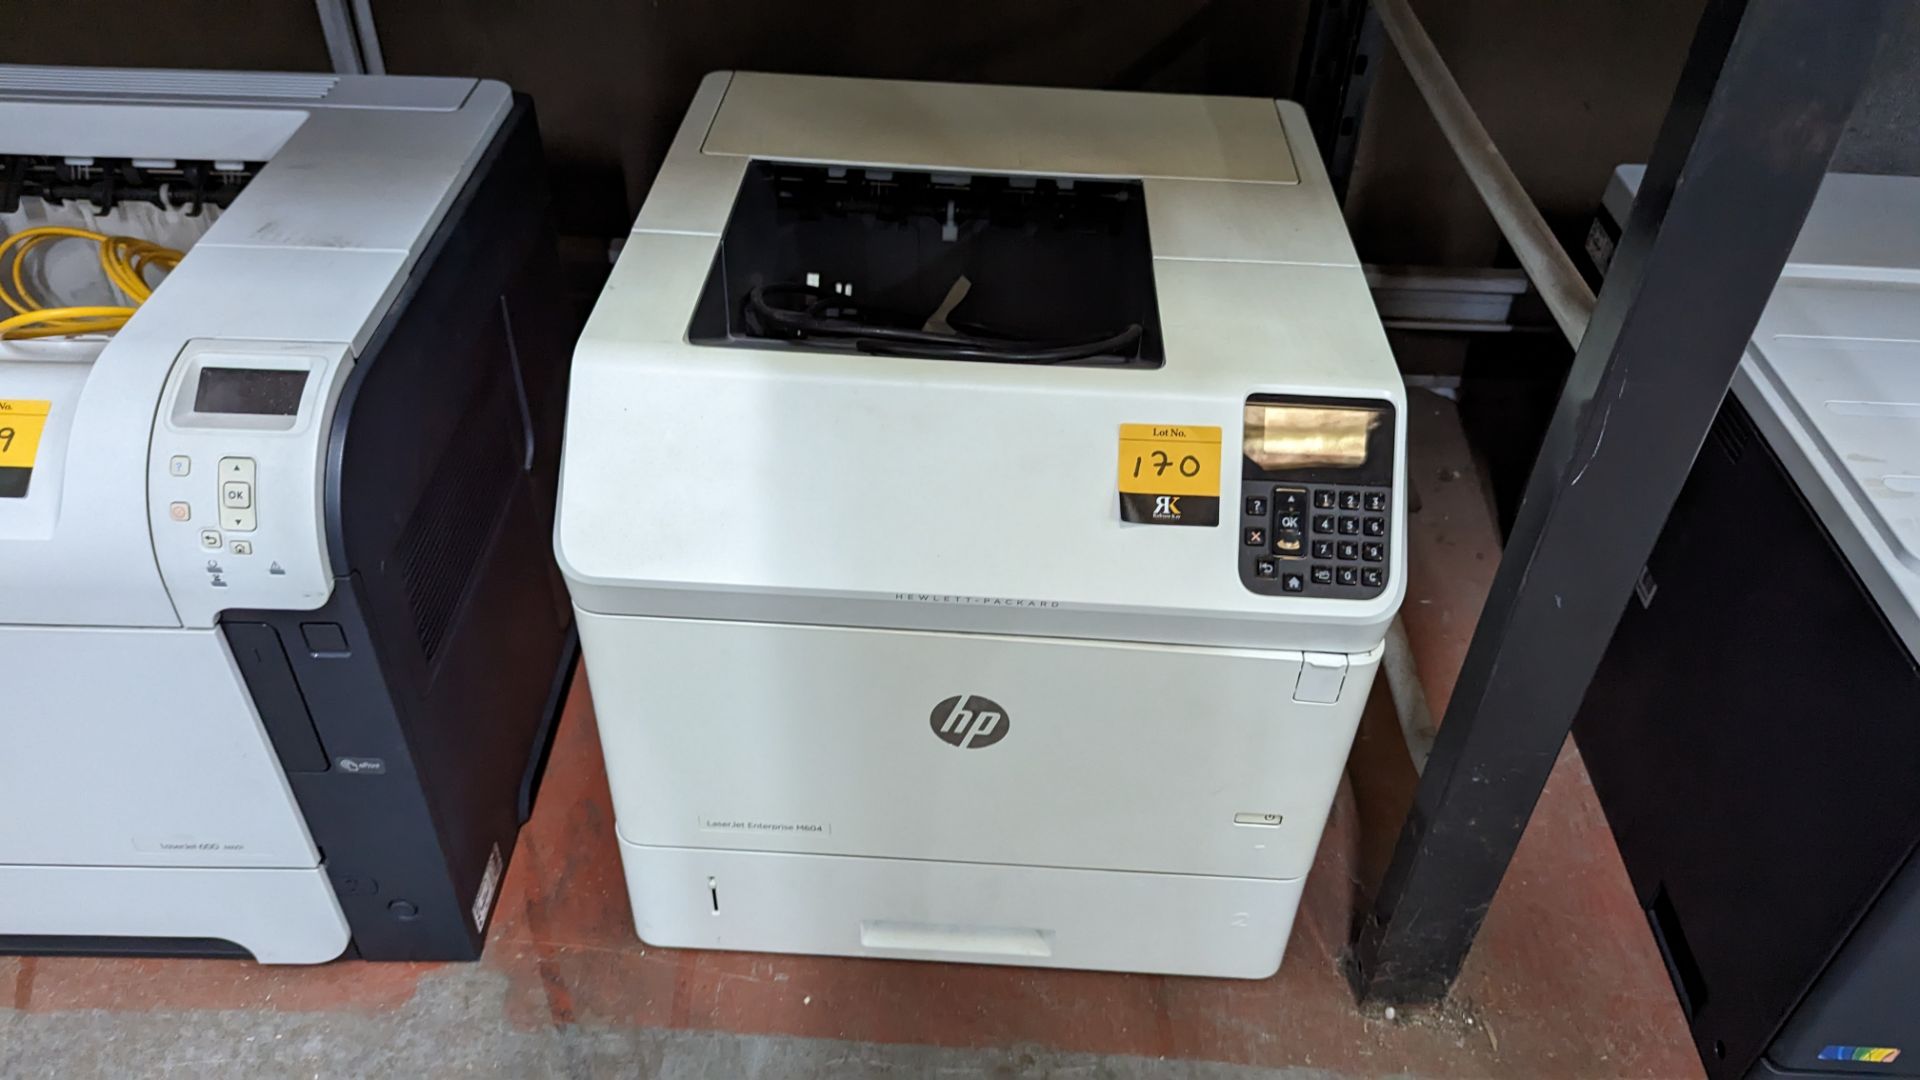 HP LaserJet Enterprise M604 printer